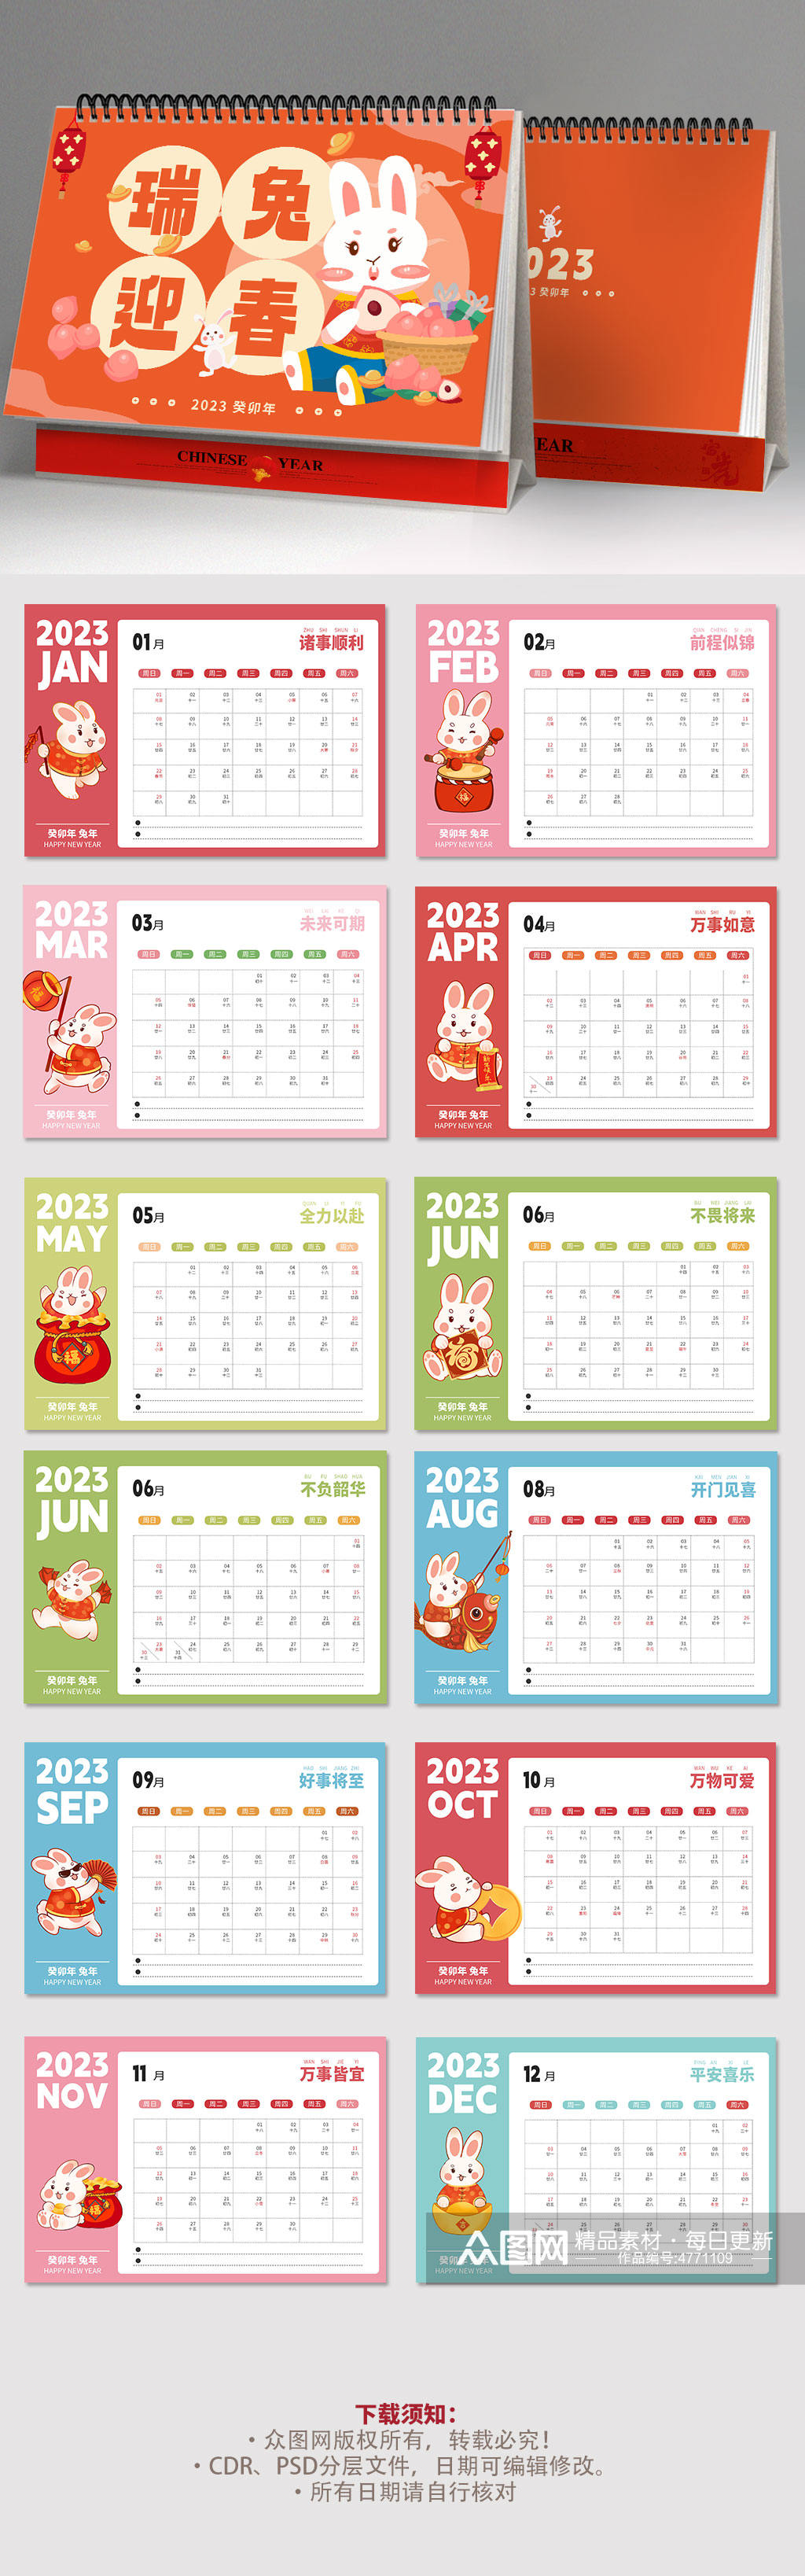 橘红色可爱2023年新年兔年台历日历设计素材